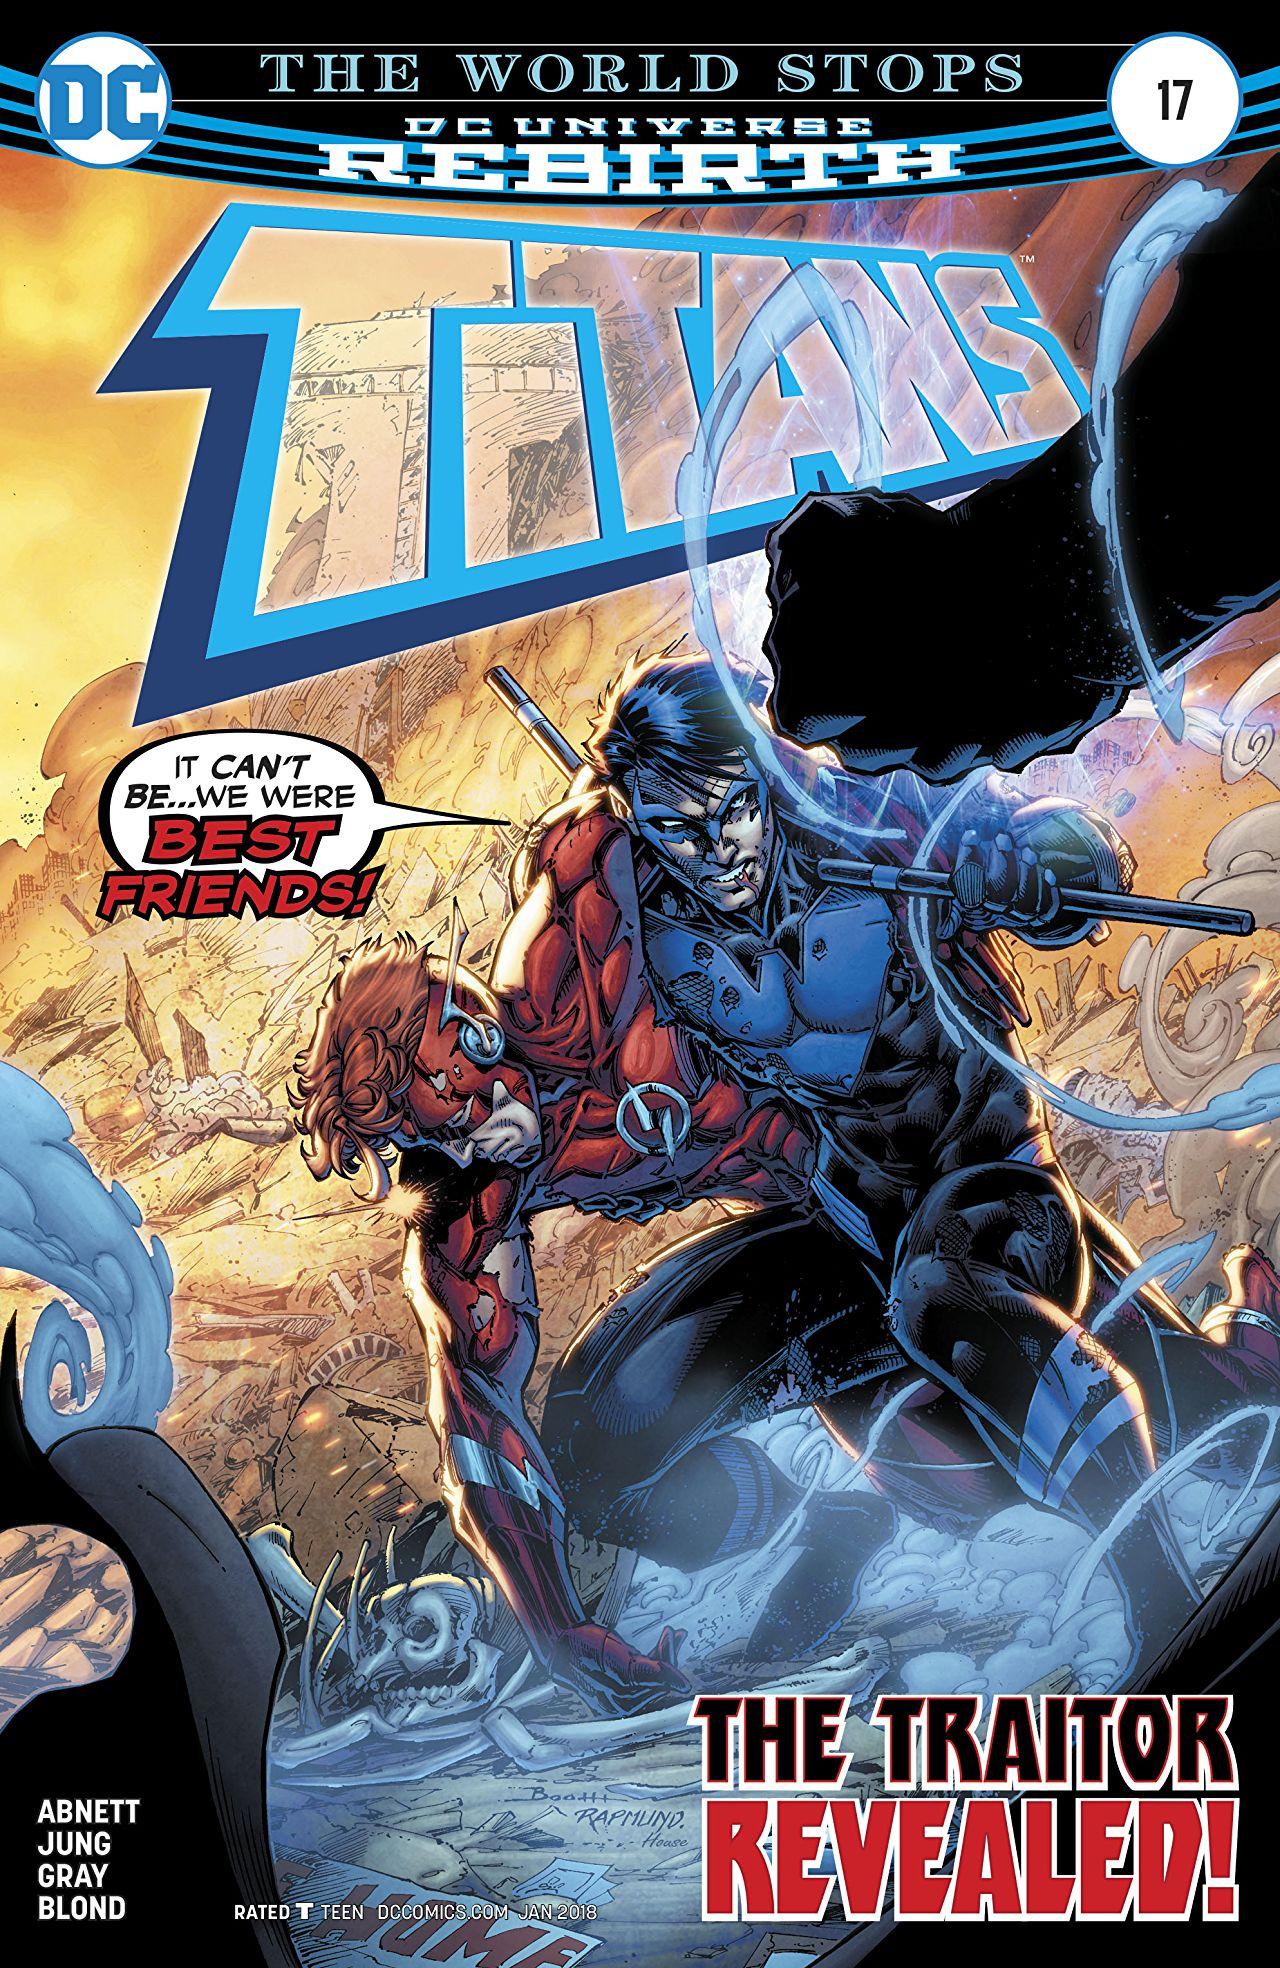 Titans Vol. 3 #17